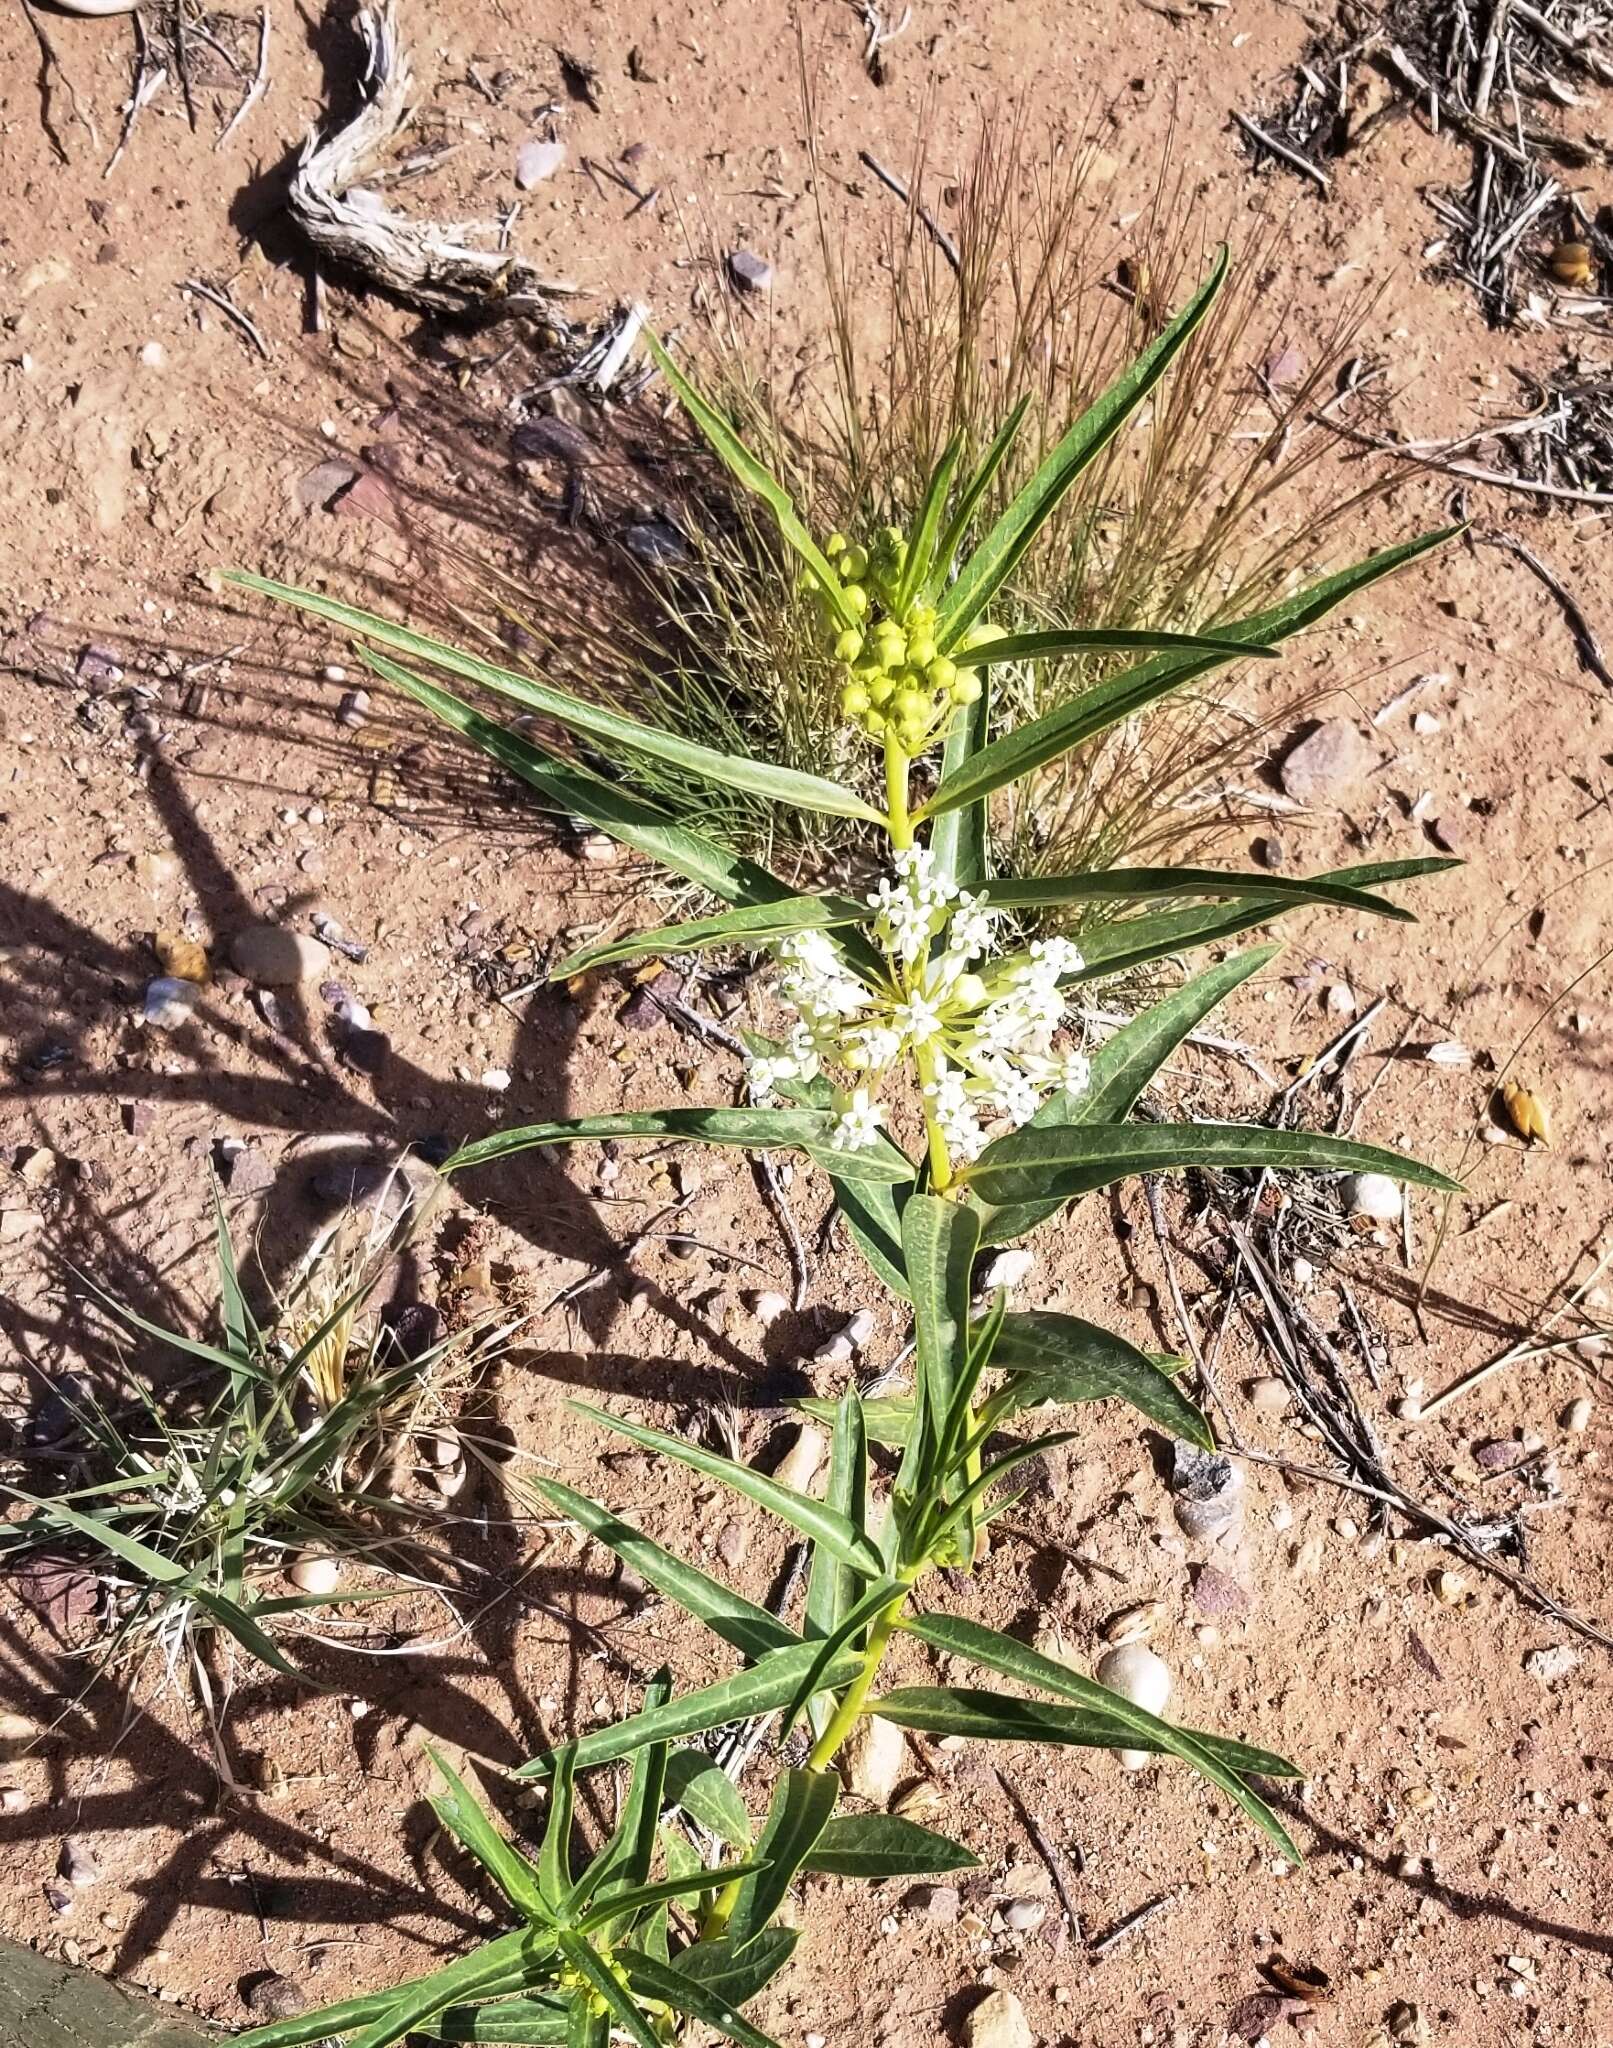 Image of Utah milkweed